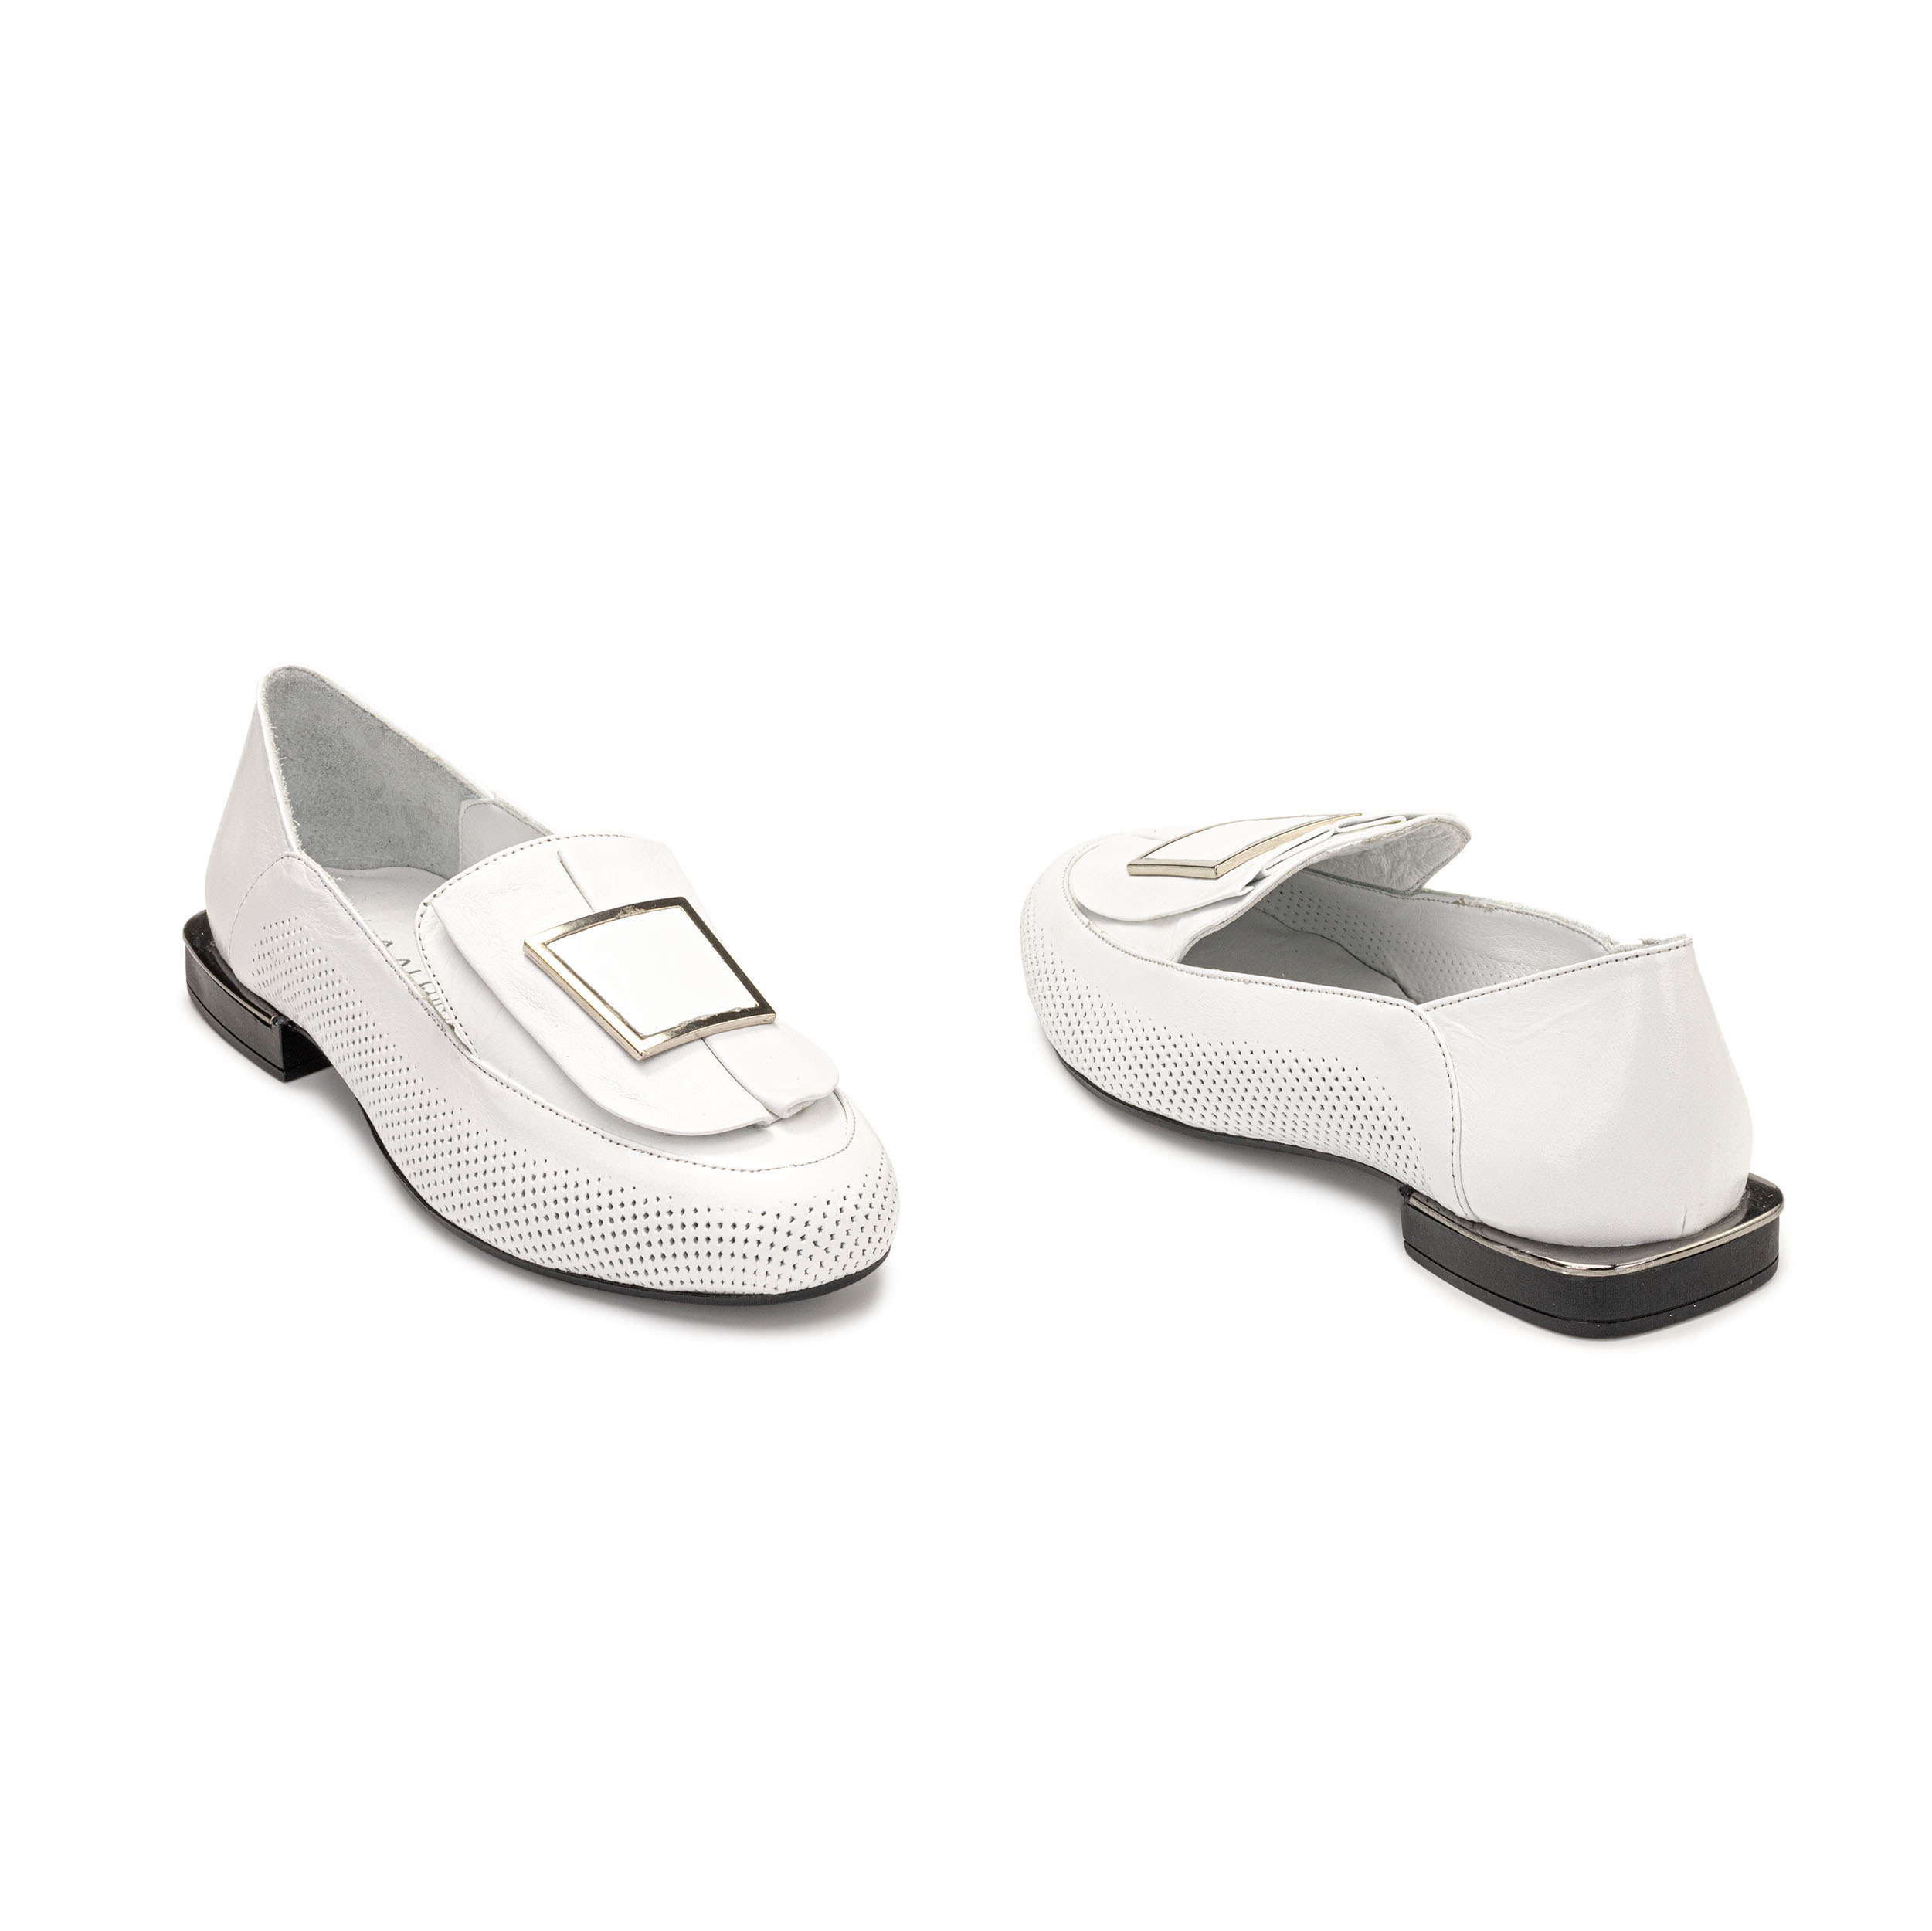 TwoEgoist Kadın Hakiki Deri Günlük Klasik Loafer - Babet Ayakkabı, Renk: Beyaz, Beden: 36